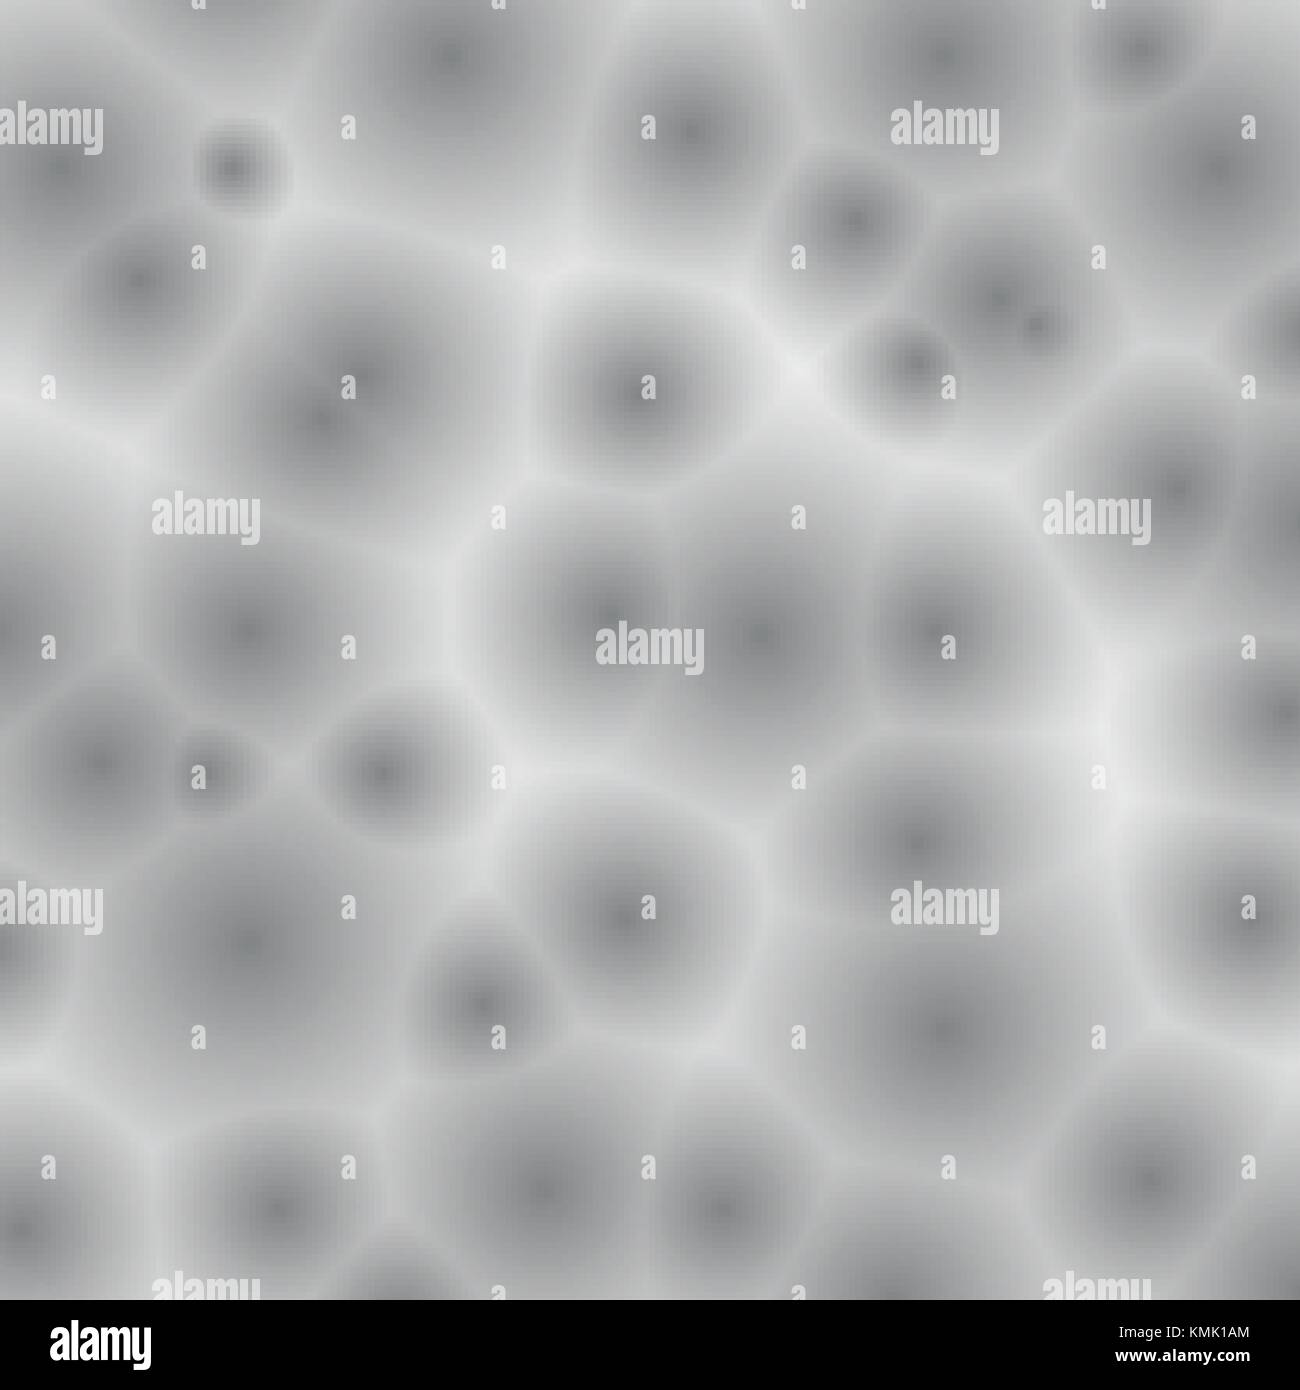 Motif blanc et gris avec des bactéries, organismes unicellulaires ou virus détails ronde sujets médicaux ou scientifiques, Vector background Illustration de Vecteur